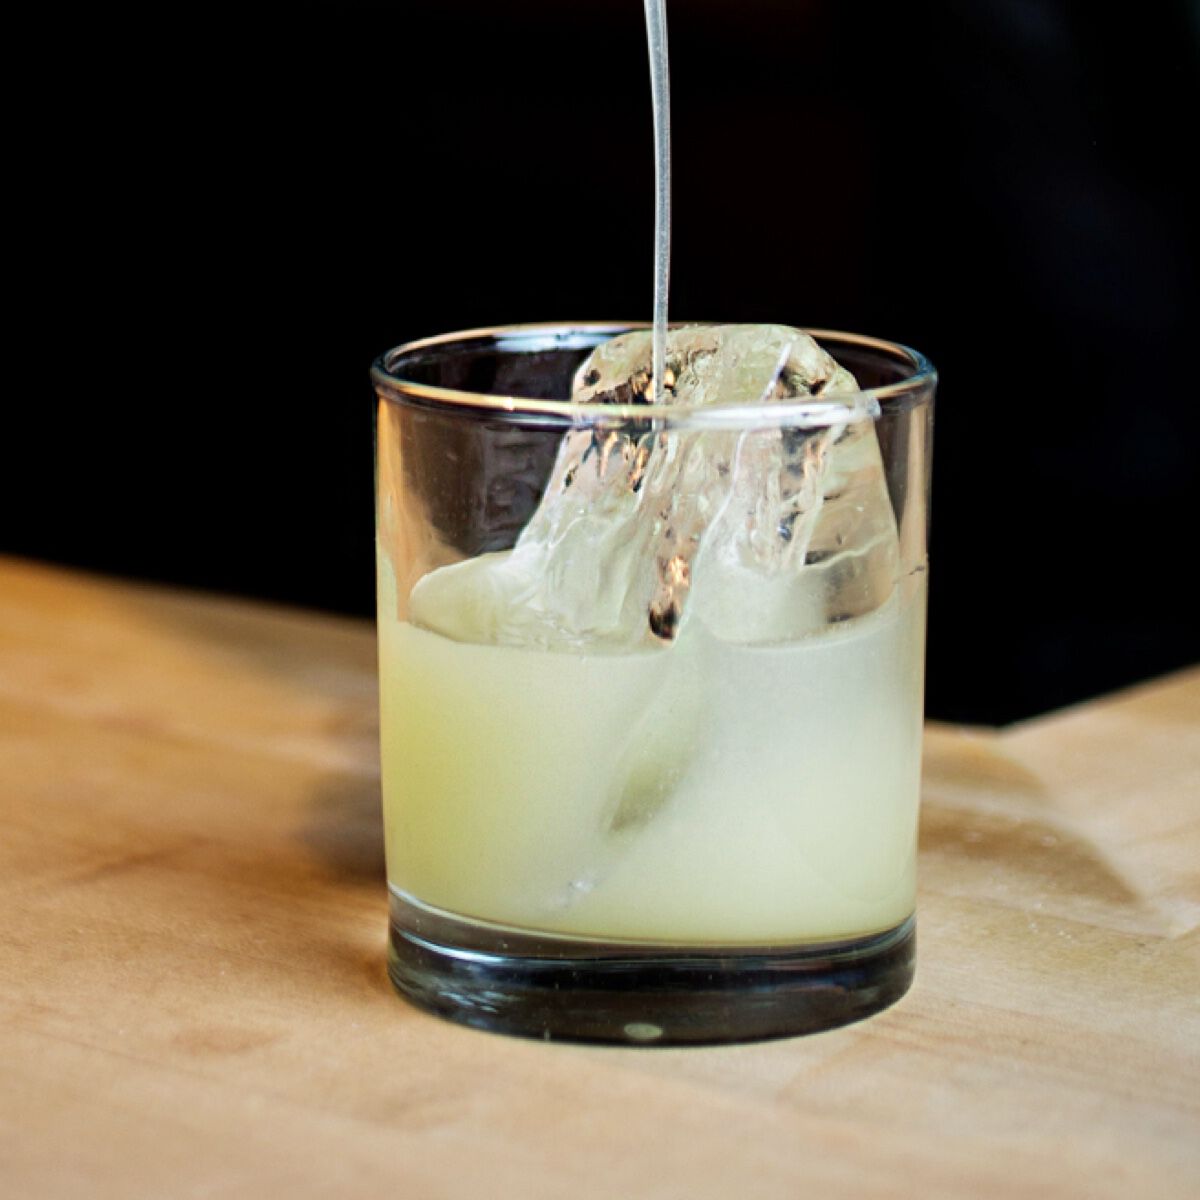 Grünes nicht alkoholisches Getränk in einem Glas